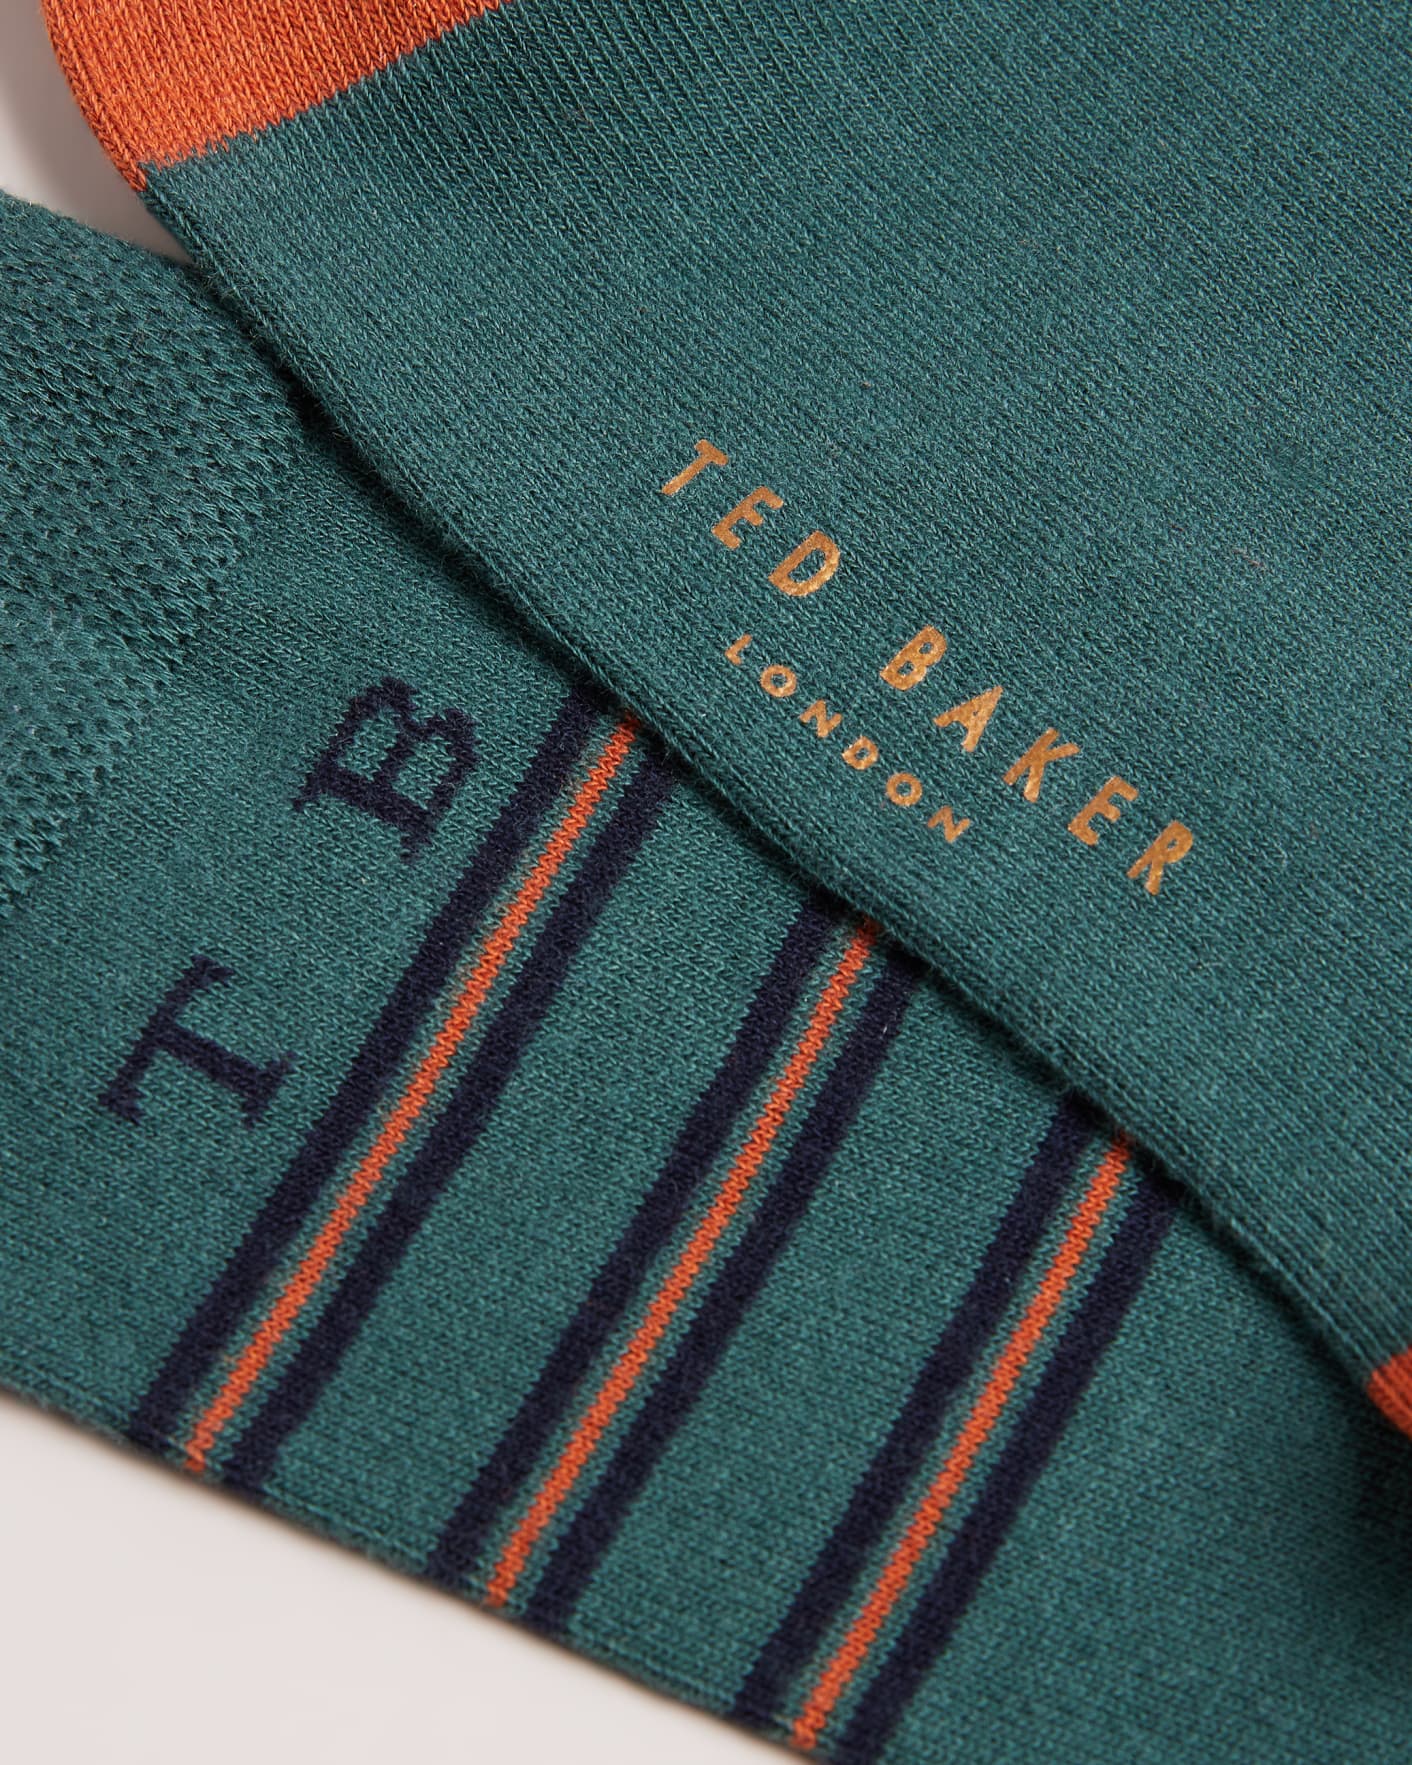 Green Stripe Socks Ted Baker